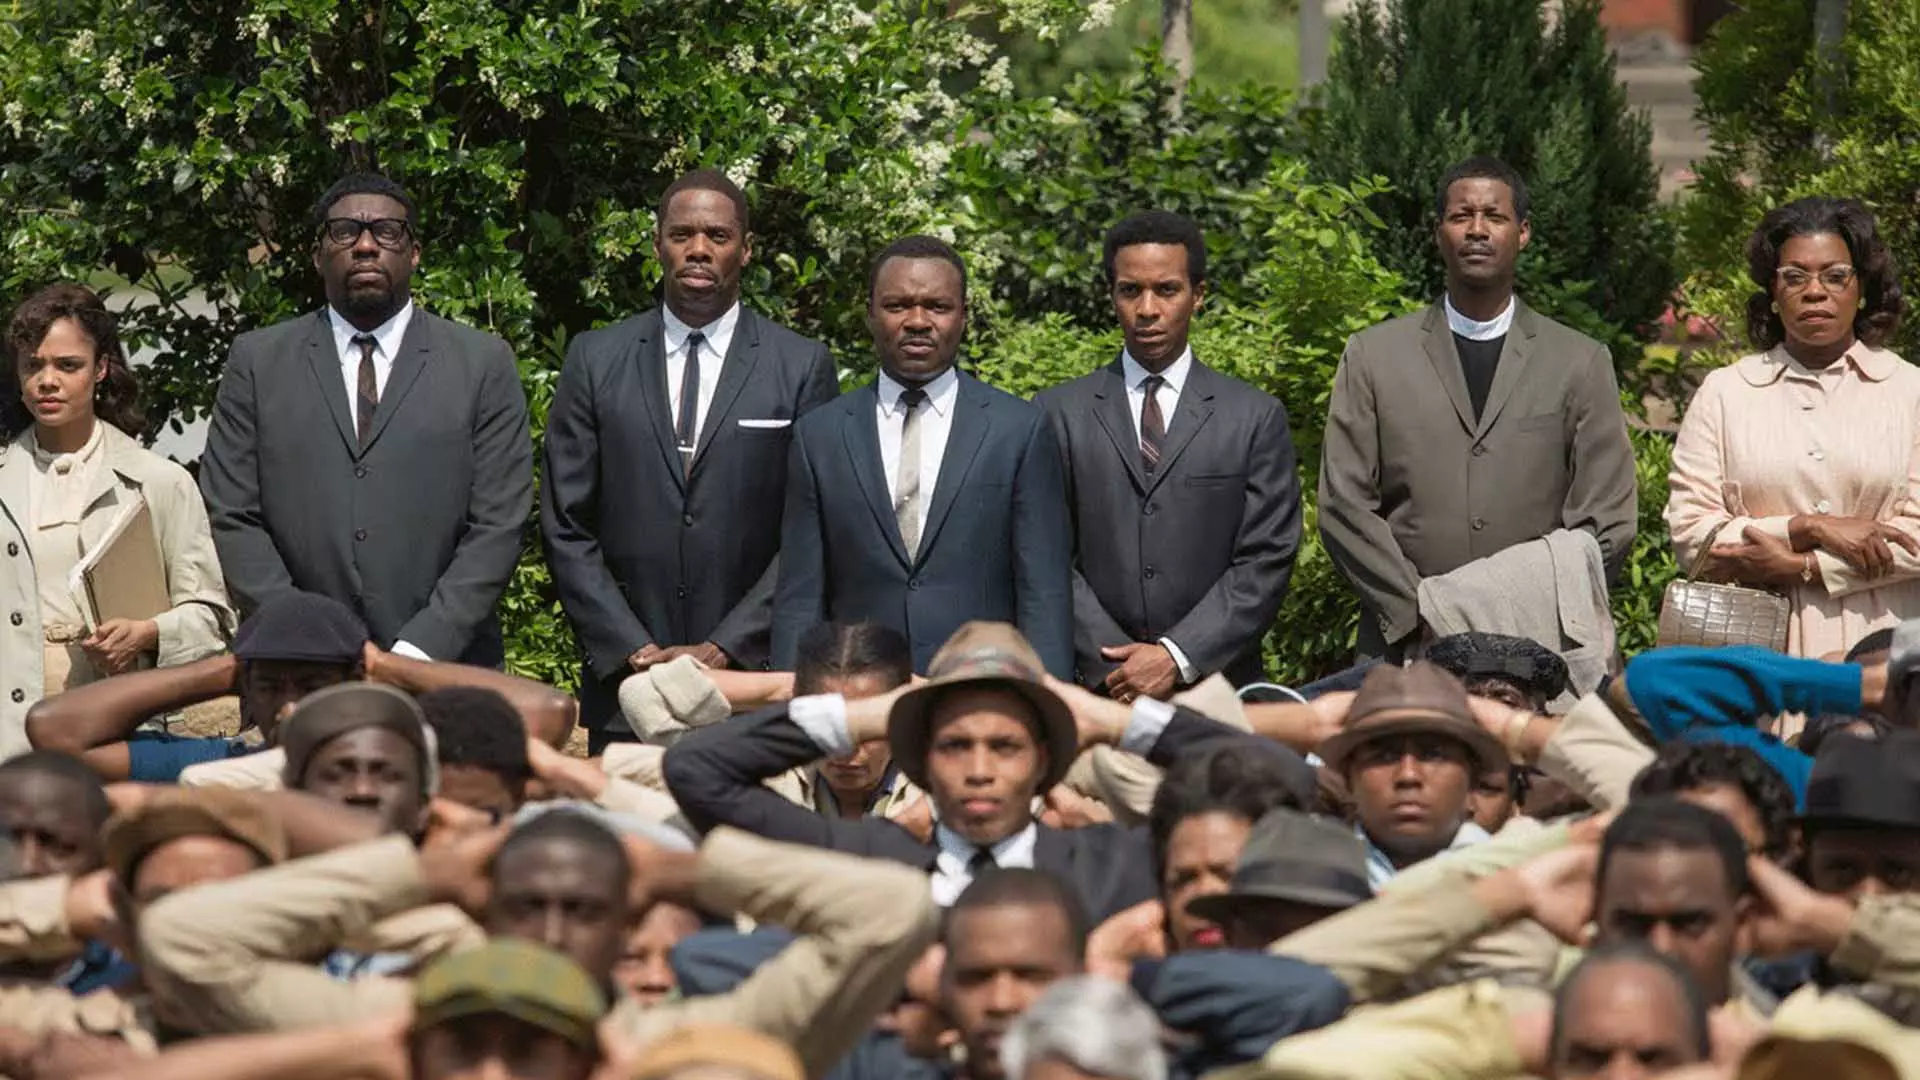 بازیگران اصلی فیلم Selma در کنار سیاه پوستانی که دستان خود را روی سر گذاشتند